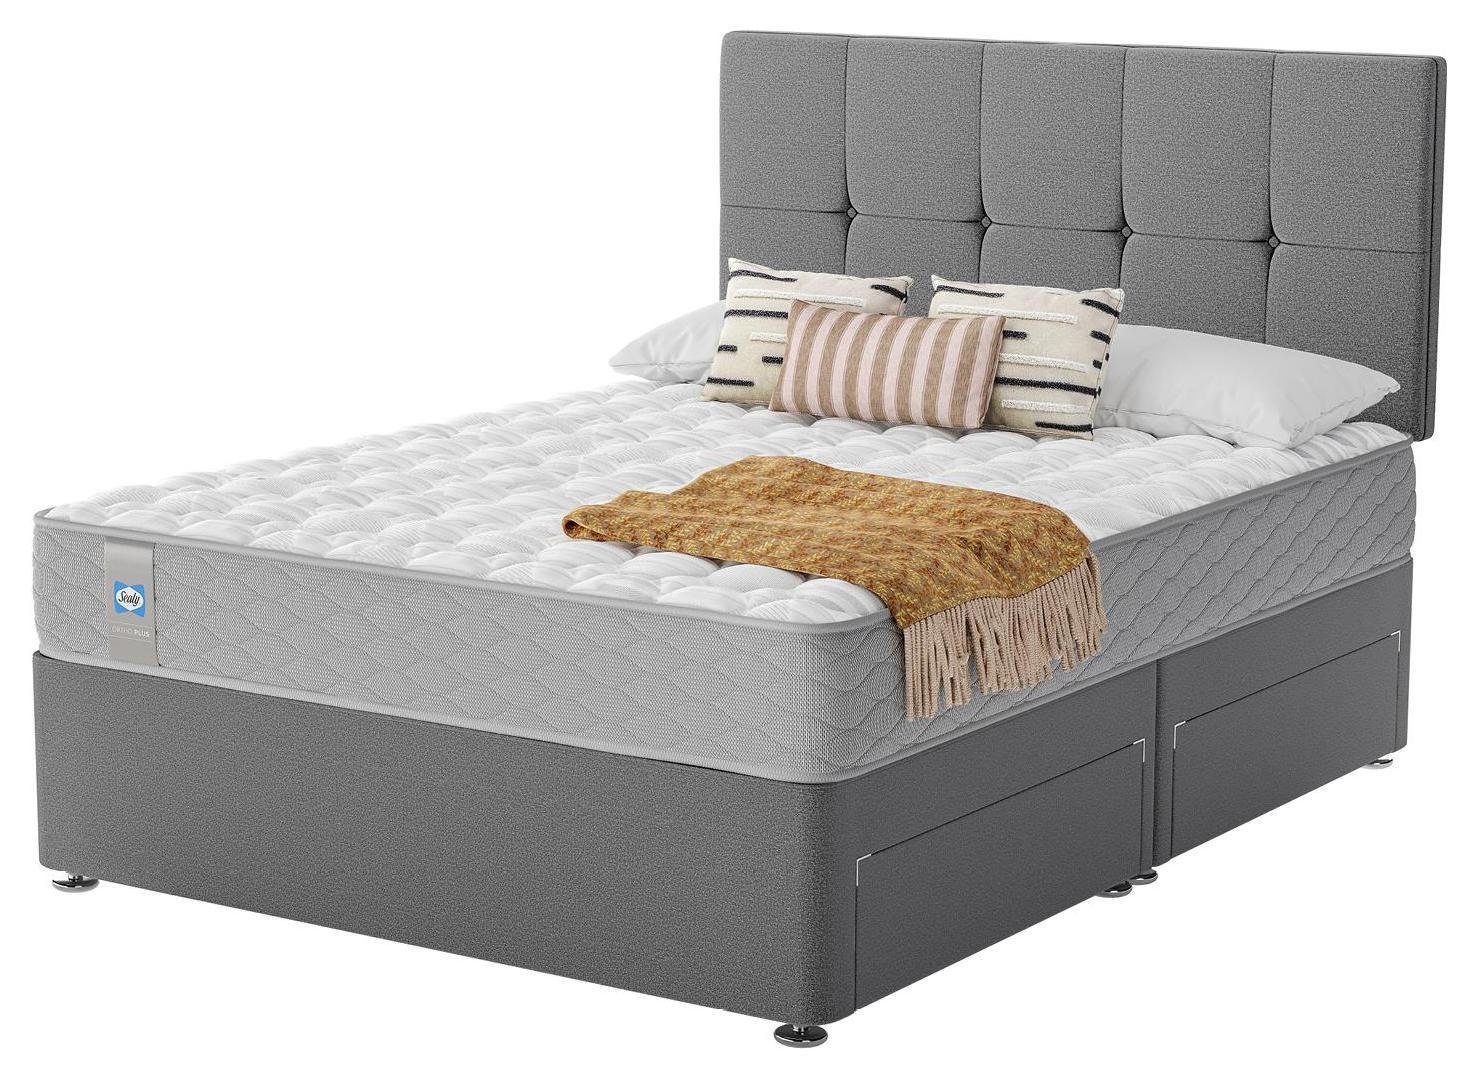 Sealy Eldon Comfort Double 4 Drawer Divan Bed - Grey